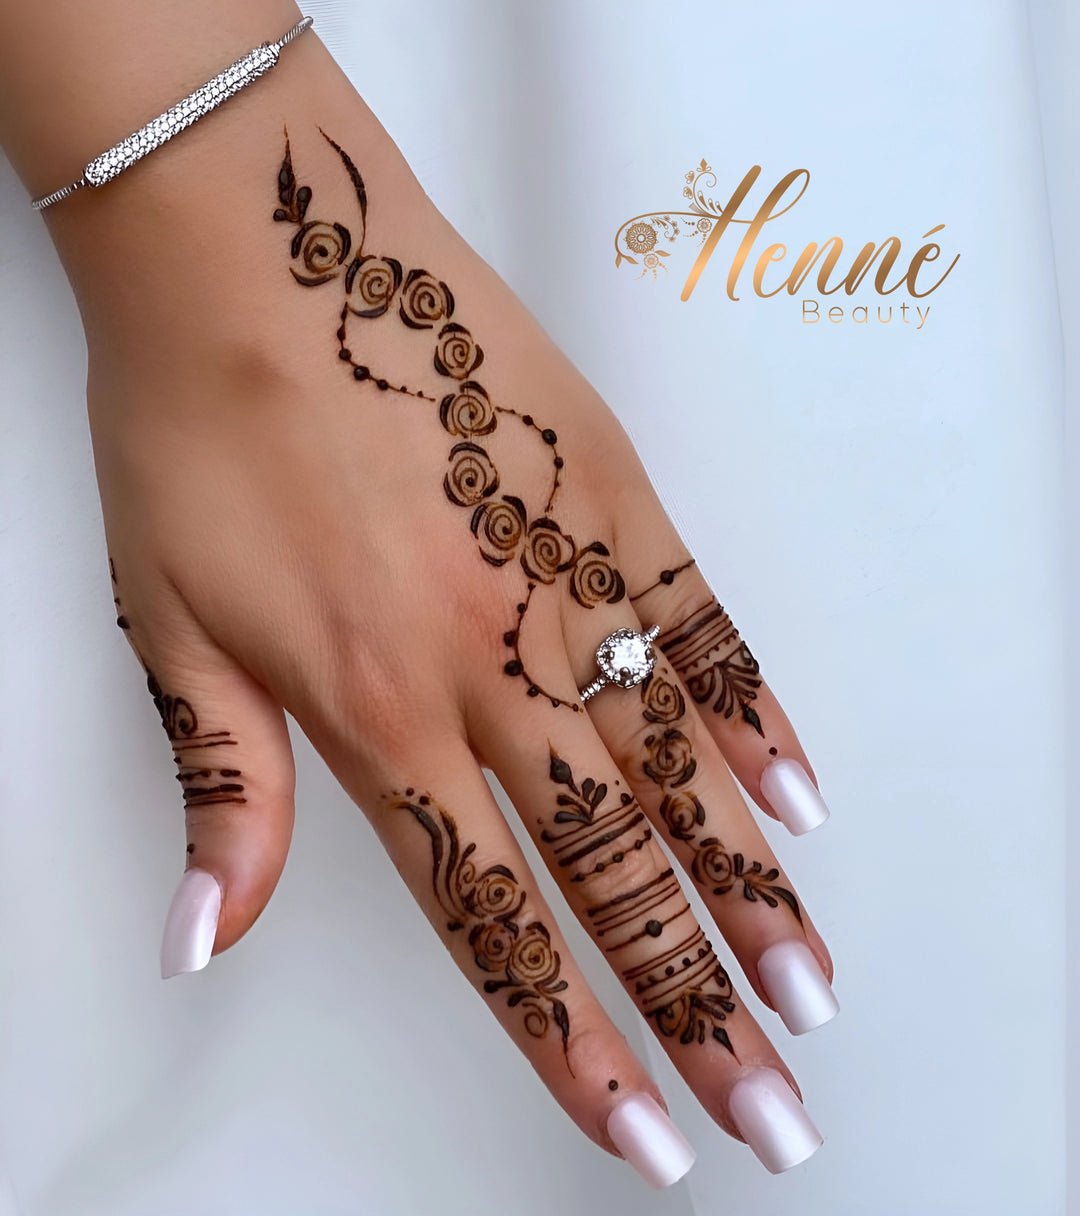  Main féminine élégamment décorée de motifs de henné en spirales et lignes, agrémentée d'une bague en diamant et d'un bracelet en argent, mettant en valeur un art corporel raffiné et un soin des ongles soigné.